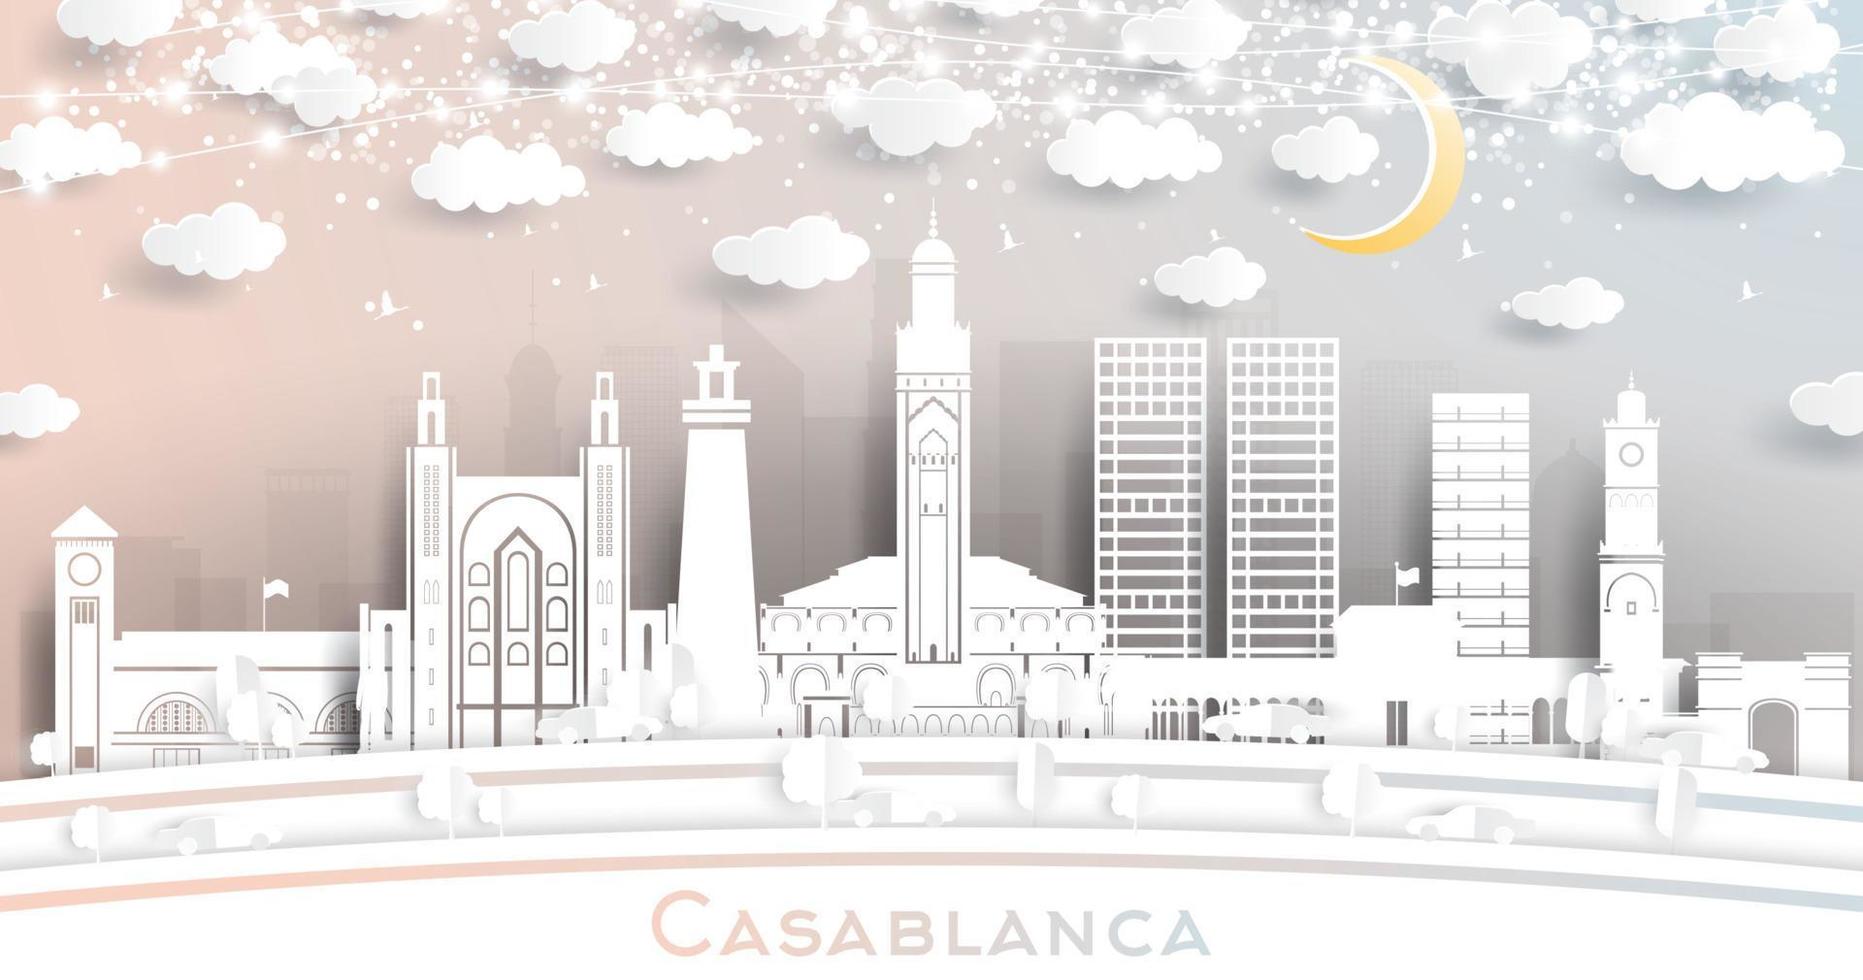 casablanca marocko stad horisont i papper skära stil med vit byggnader, måne och neon krans. vektor